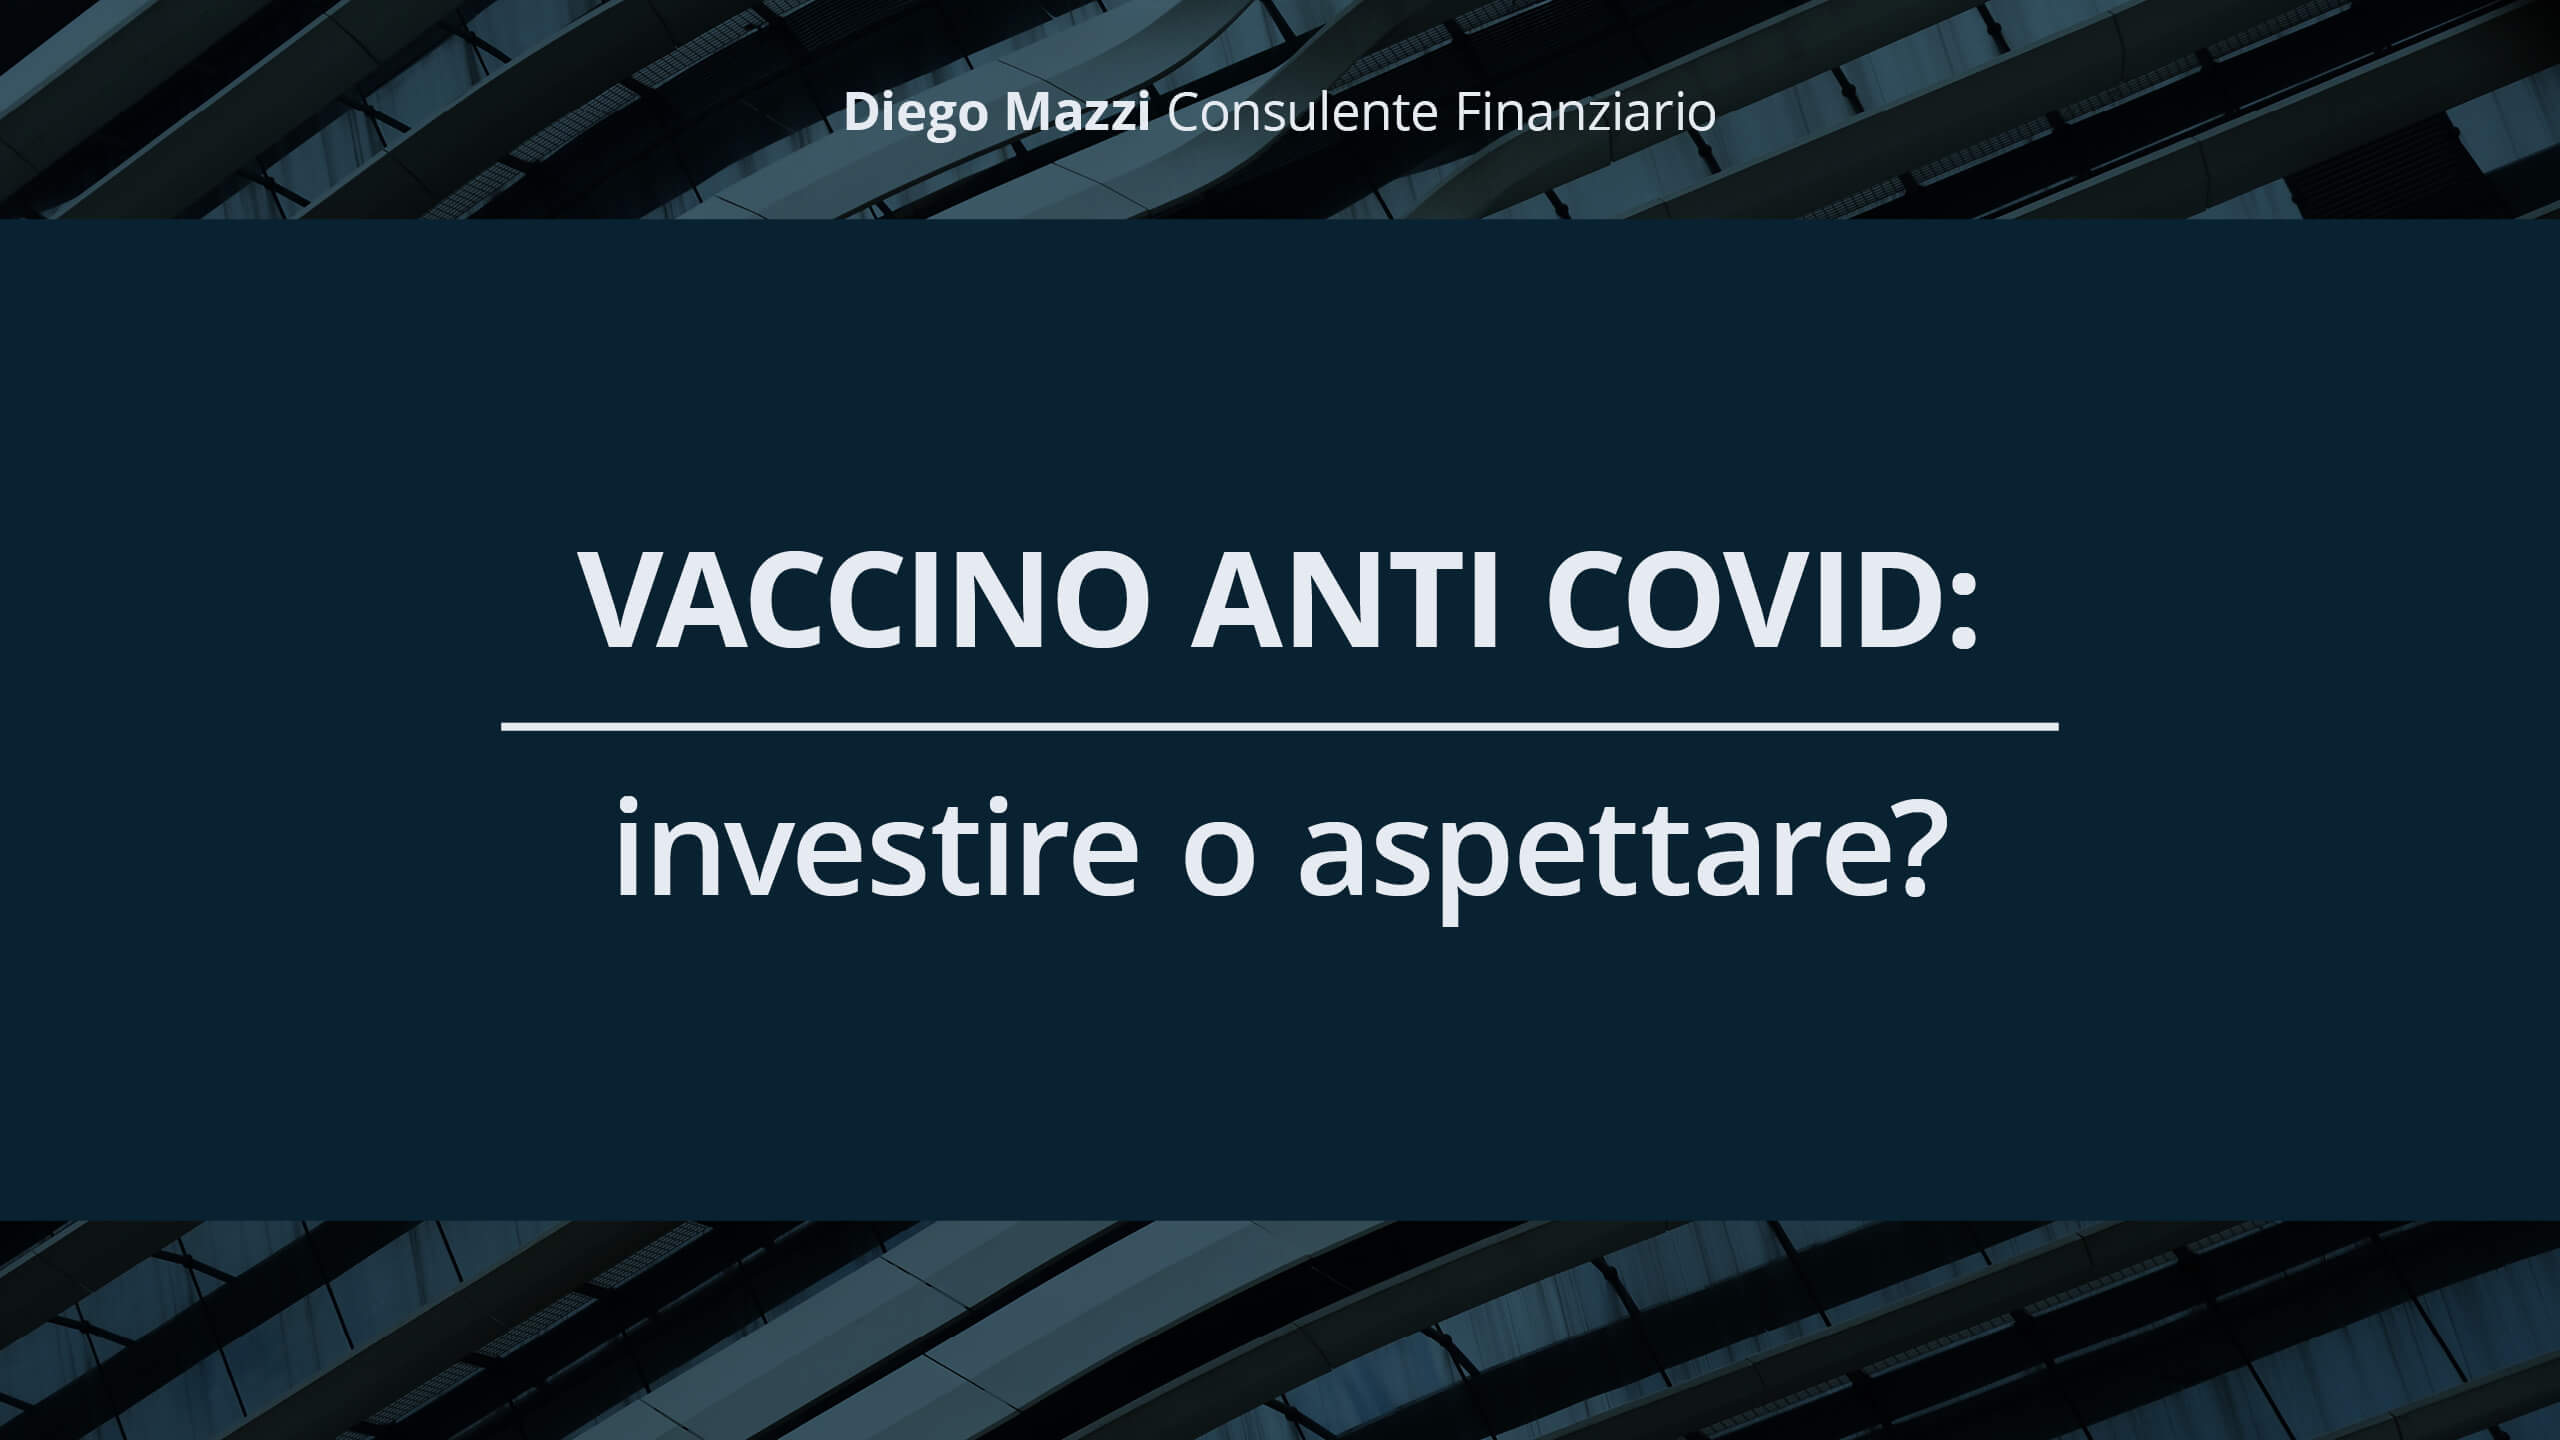 Finanza personale: quali sono i consigli affidabili? - Diego Mazzi